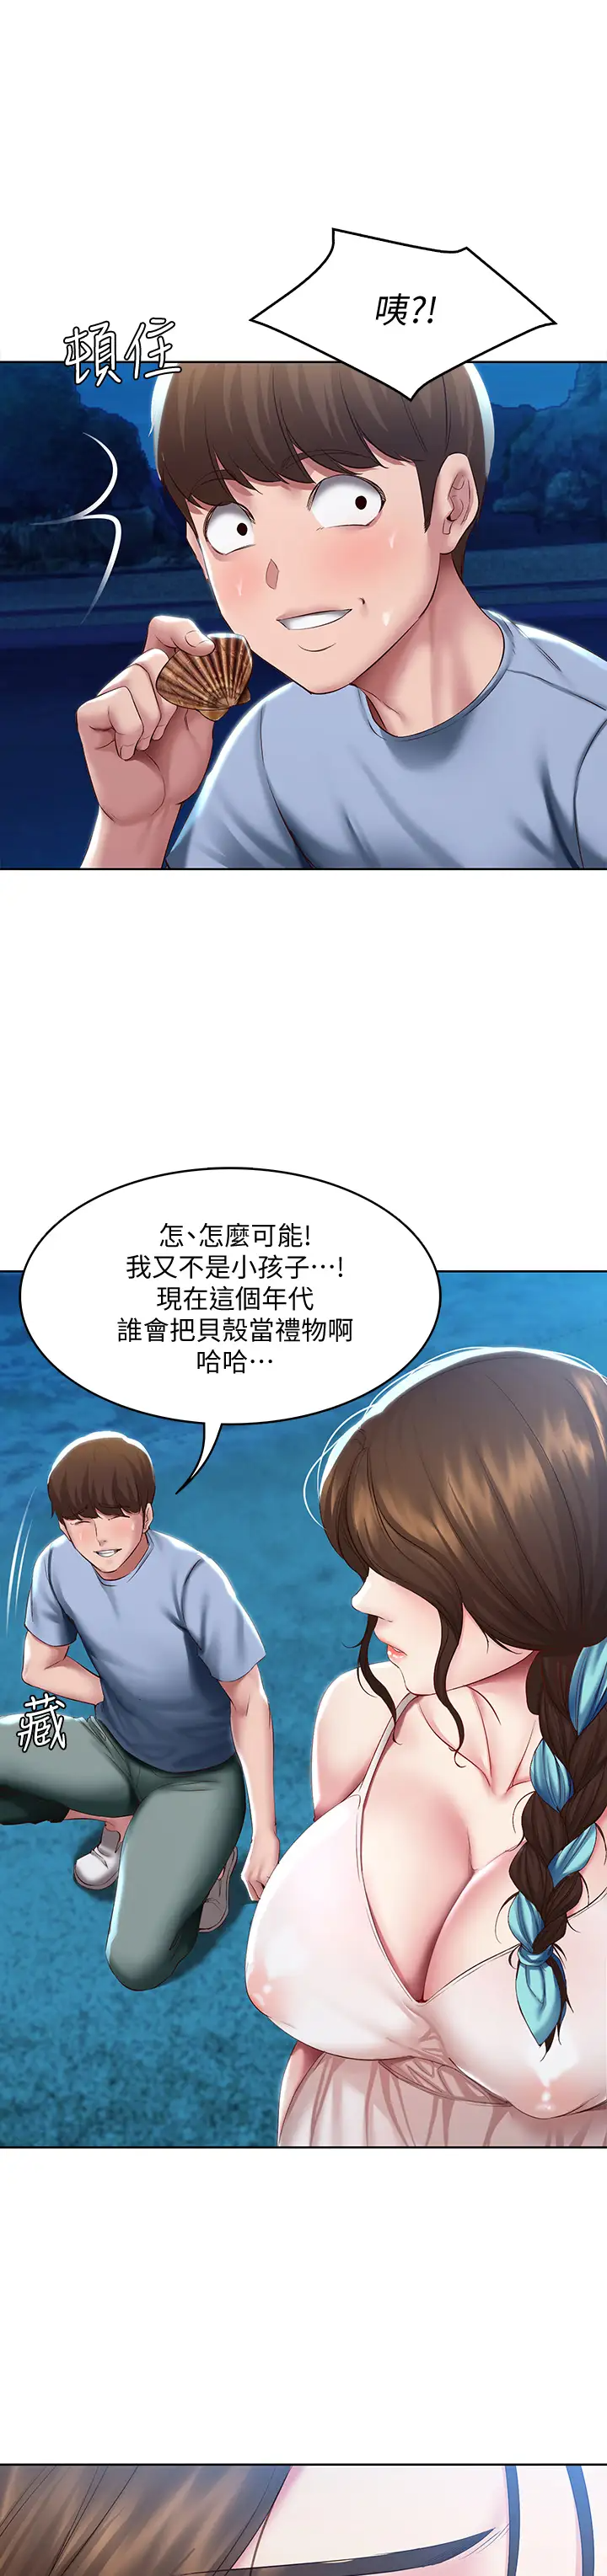 韩国污漫画 寄宿日記 第80话在空无一人的海边求爱 17